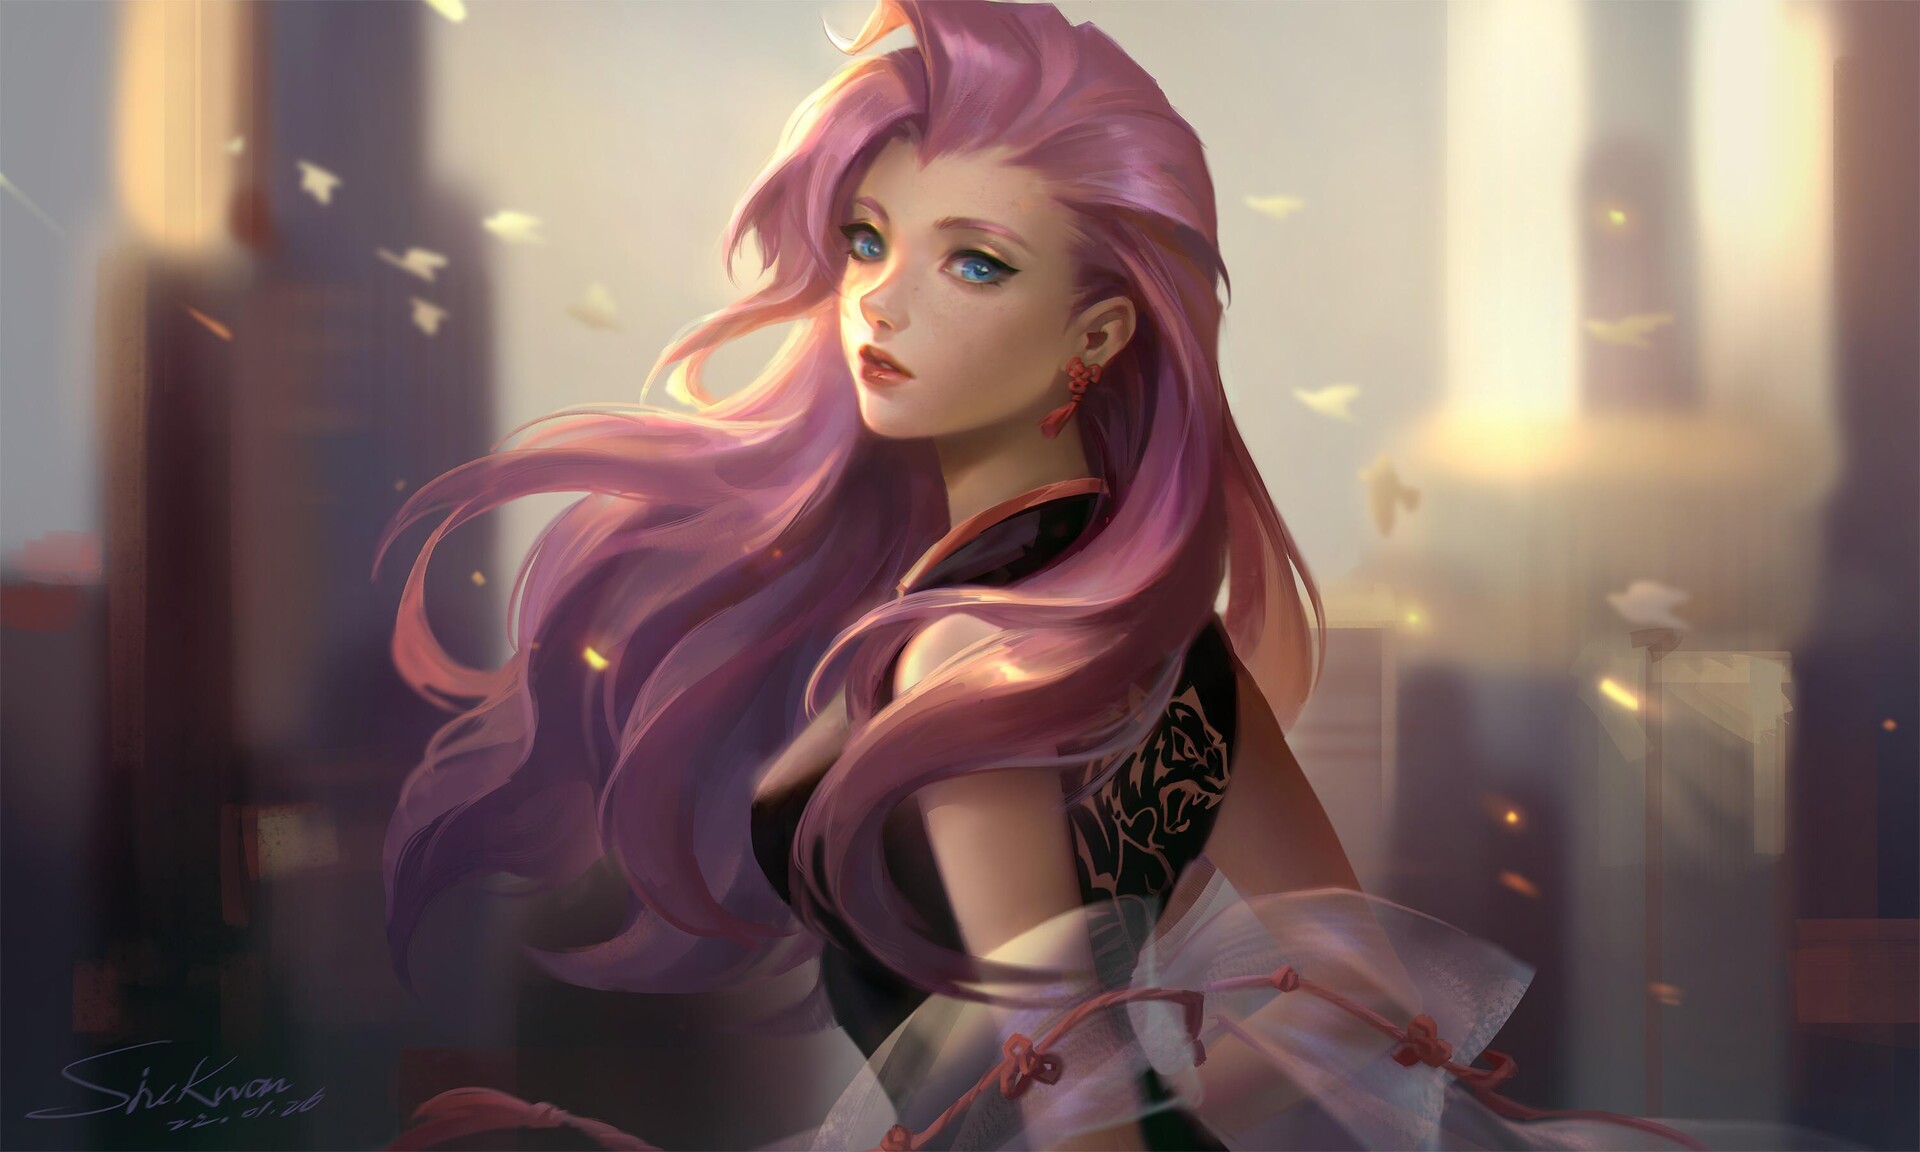 SiuKwan Chueng Seraphine League Of Legends League Of Legends KDA Seraphine Women Purple Hair City Bl 1920x1152